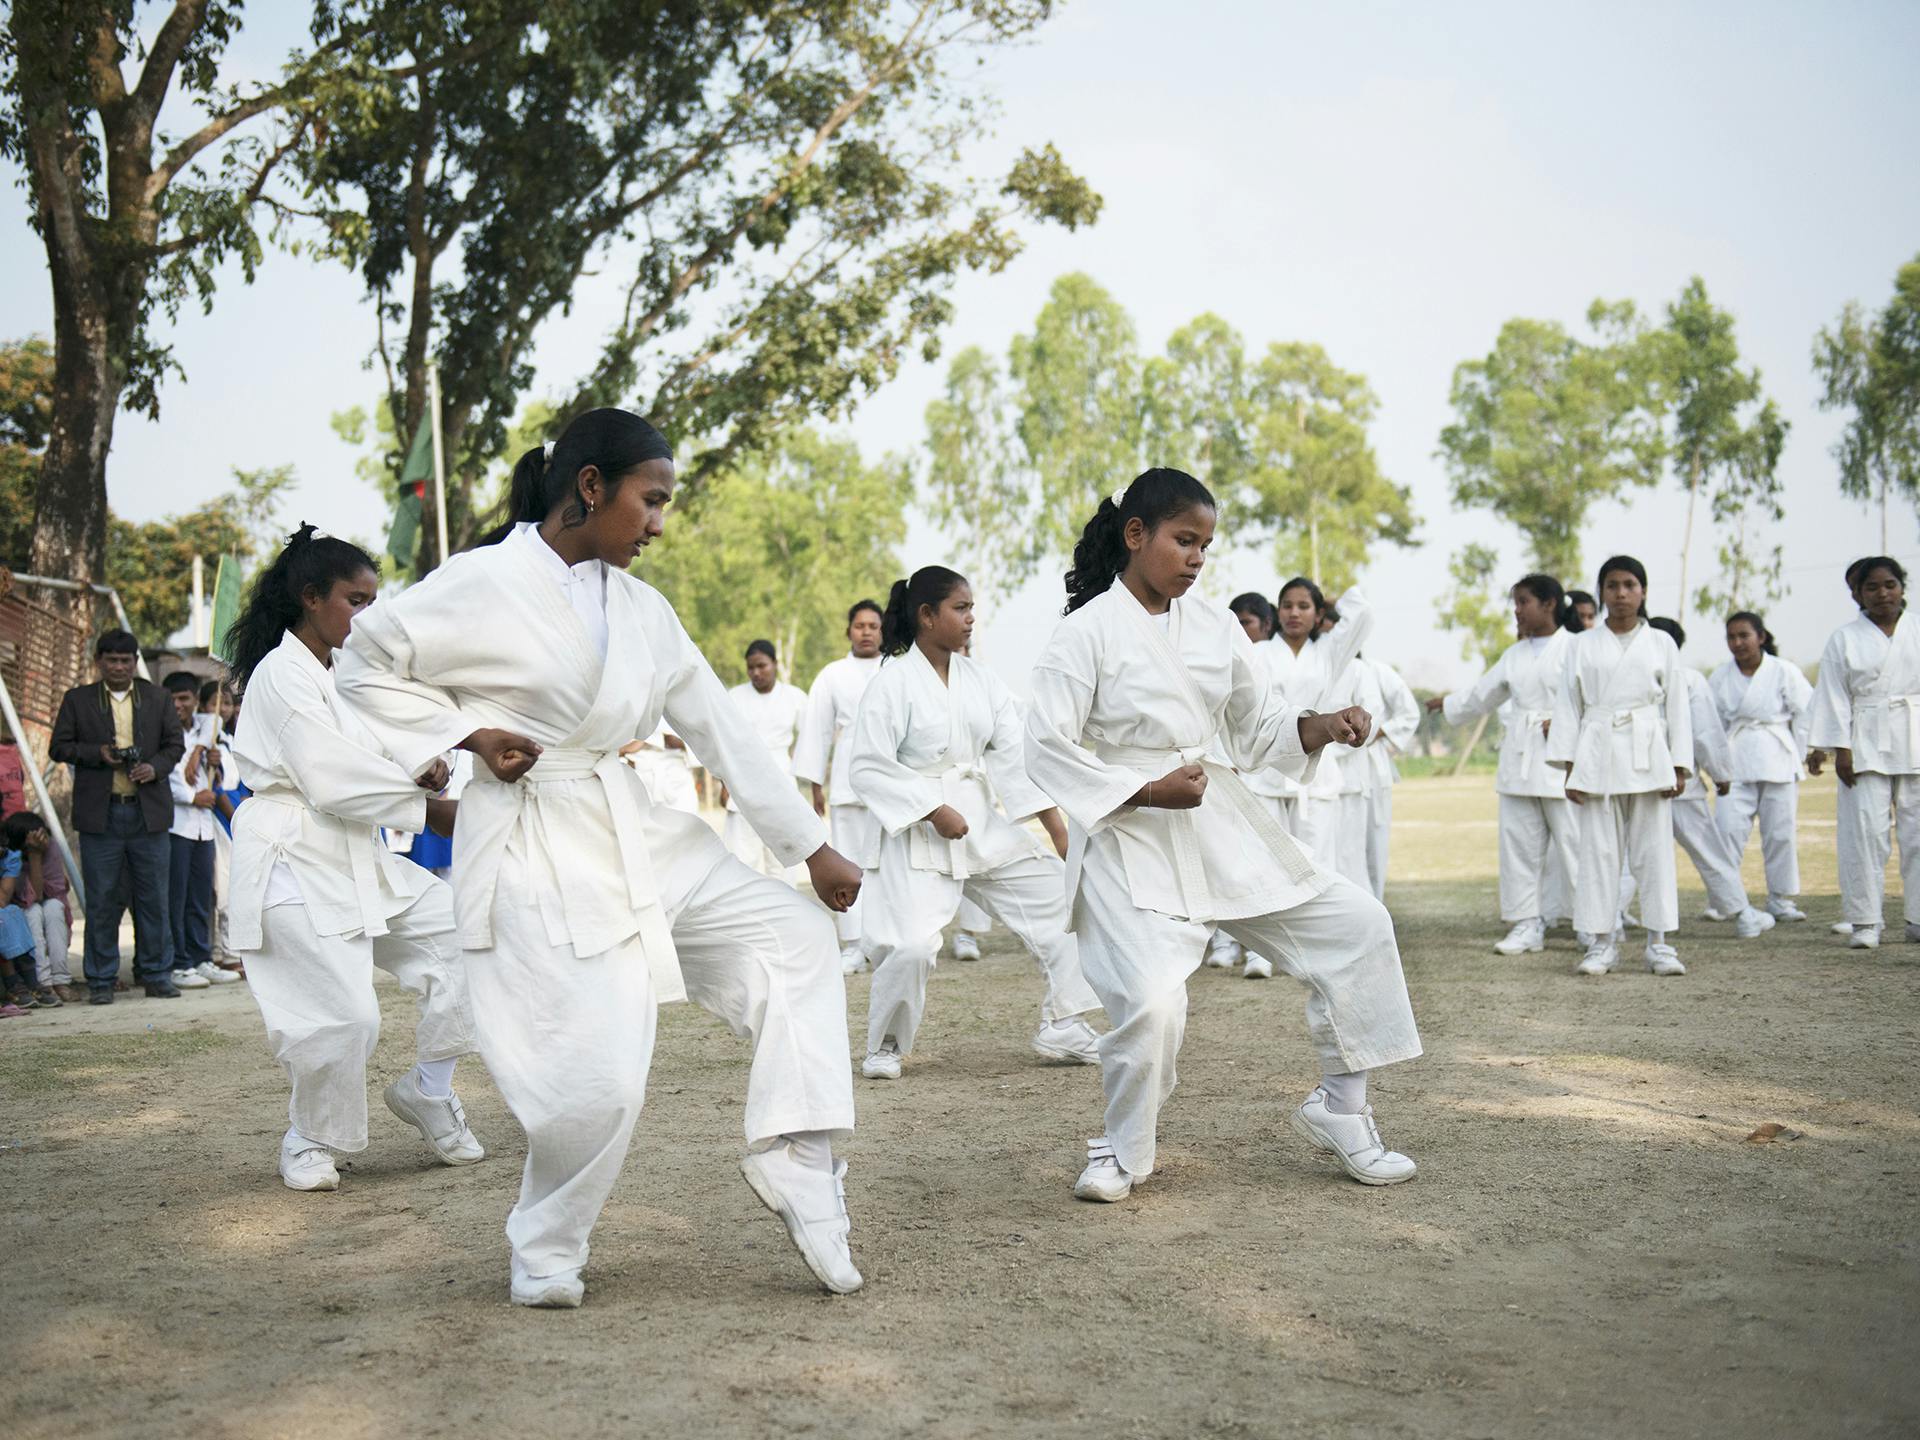 Ett stort antal flickor i vita karatedräkter står utomhus och tränar karate. Bakom dom syns träd och flera personer som tittar på.